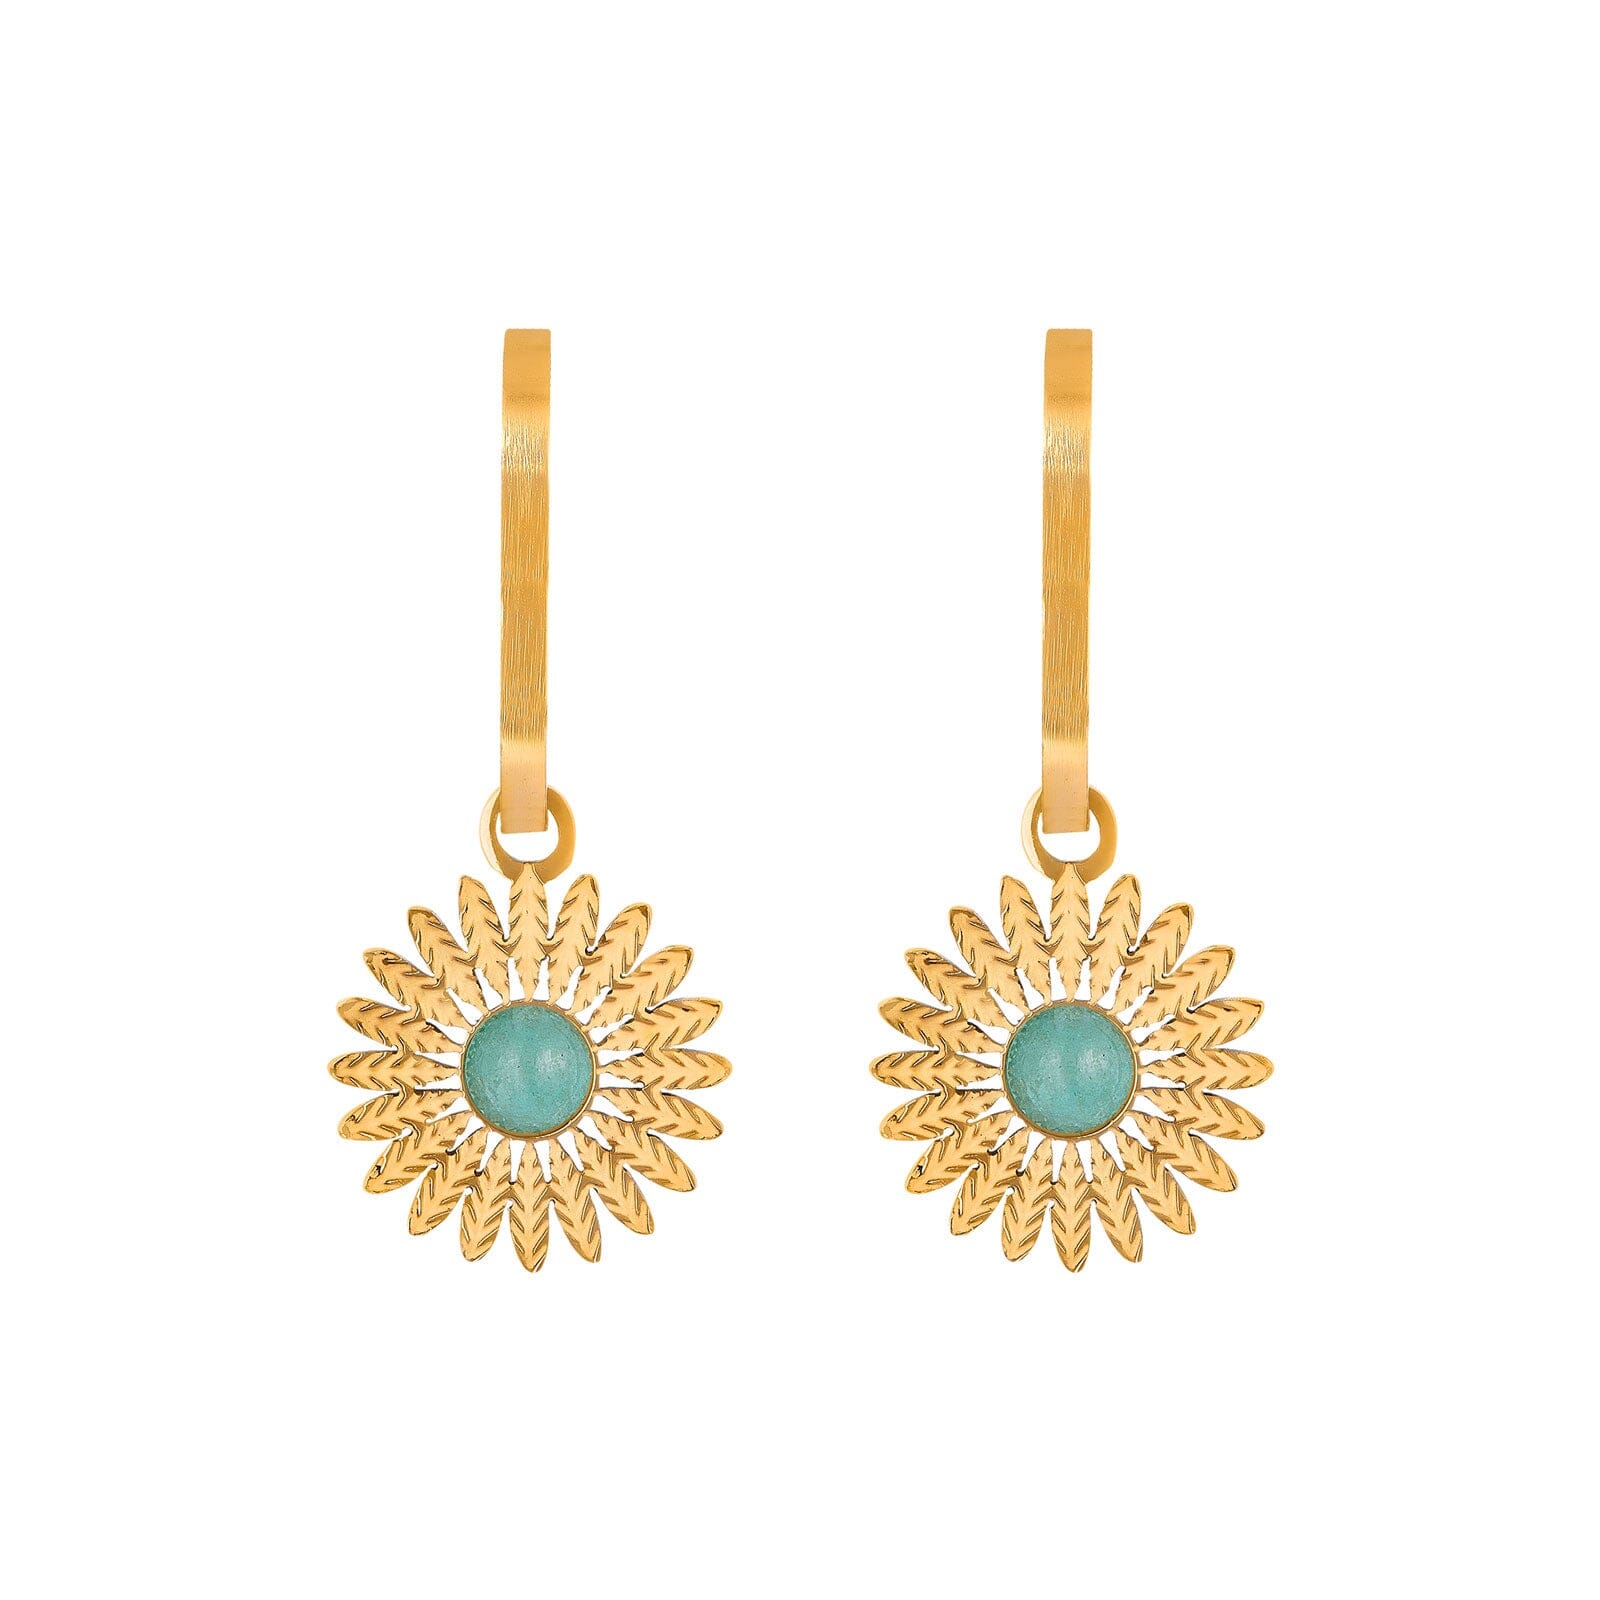 Gold Dangling Sunflower Earrings earrings Vinty Jewelry 